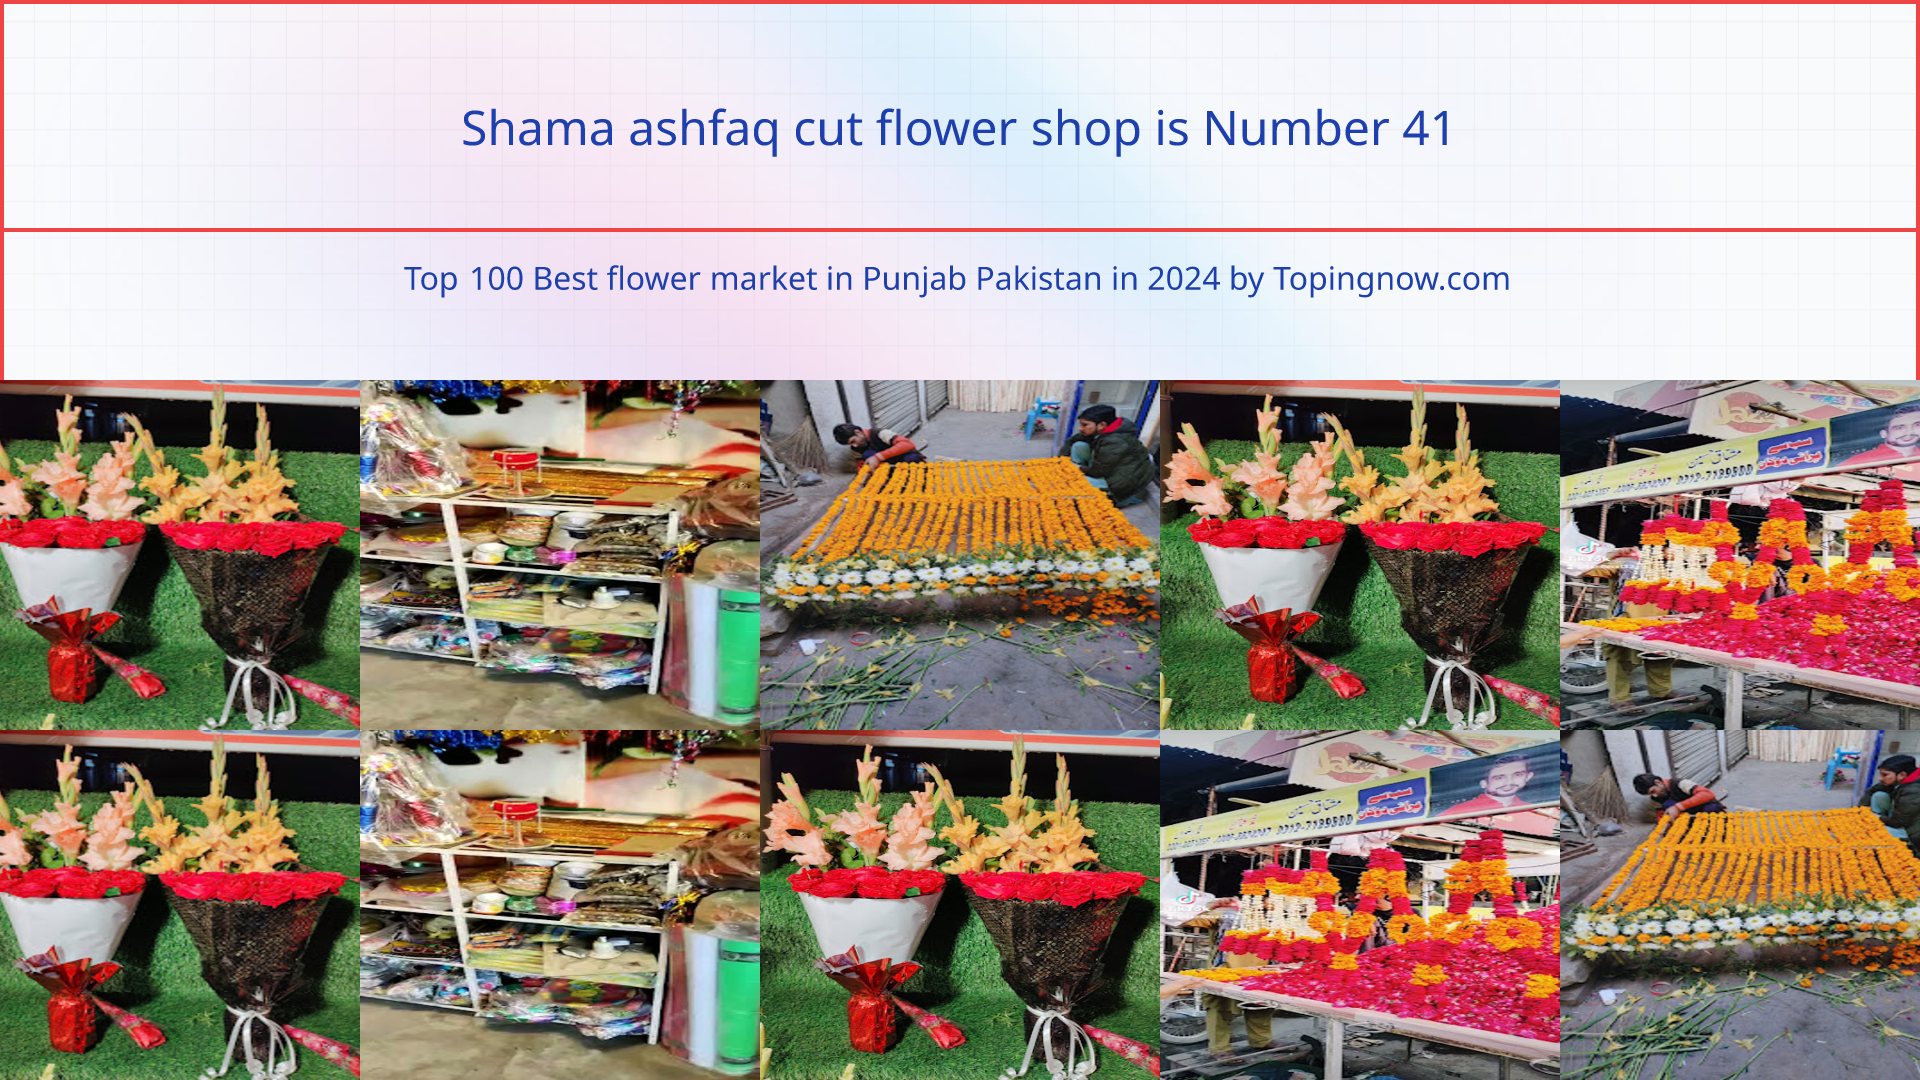 Shama ashfaq cut flower shop: Top 100 Best flower market in Punjab Pakistan in 2024